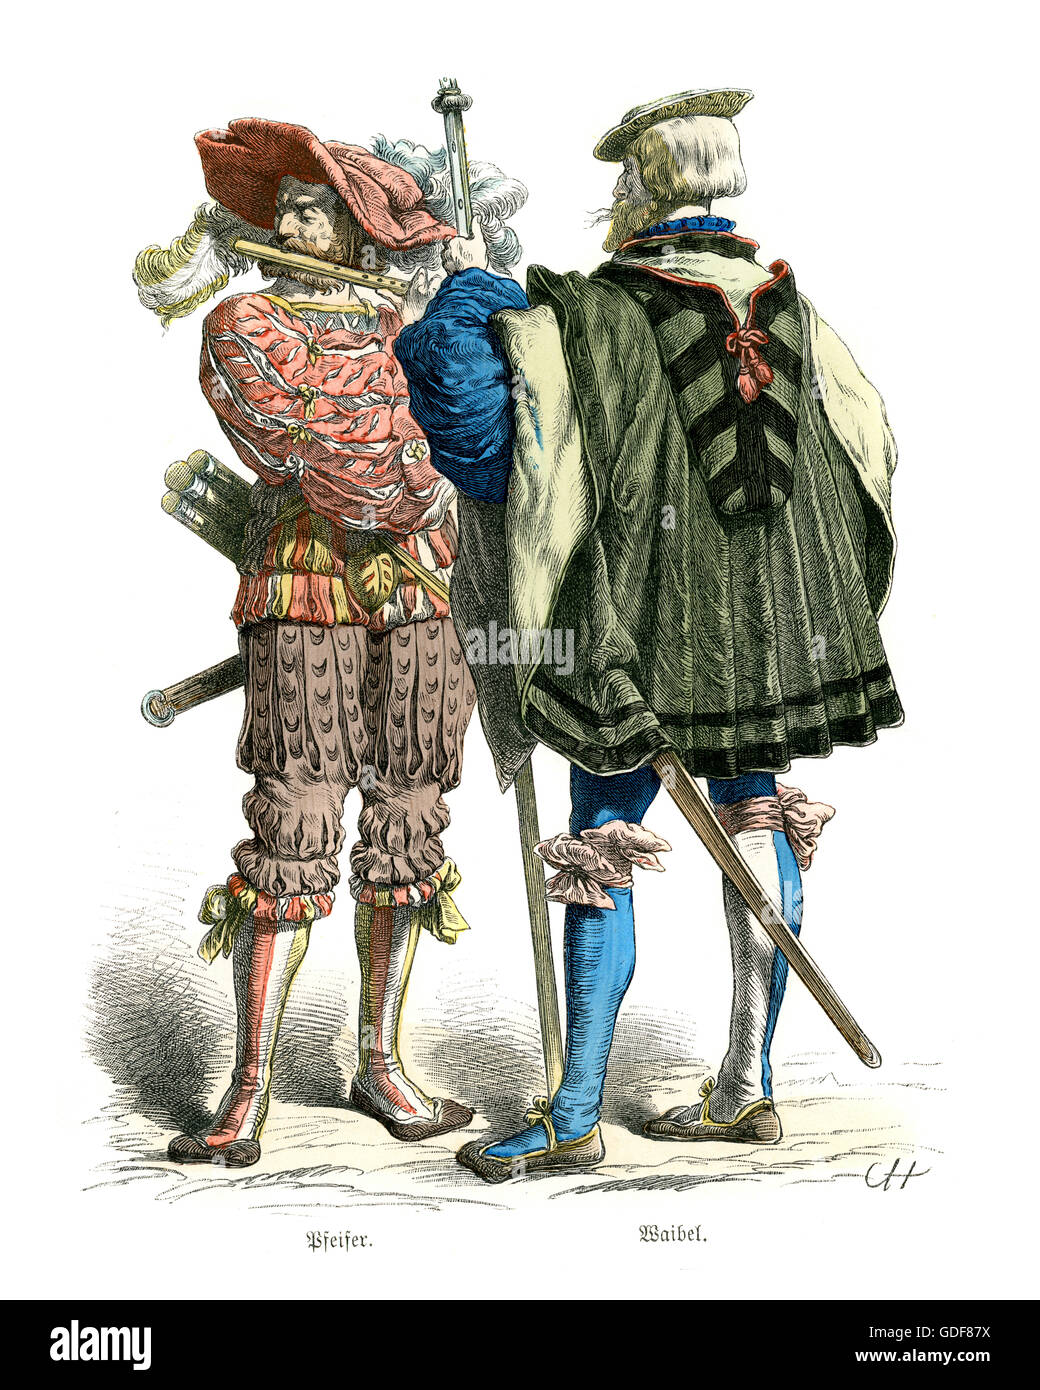 Les costumes des soldats allemand Landsknecht du 16ème siècle. Piper et seargent Banque D'Images